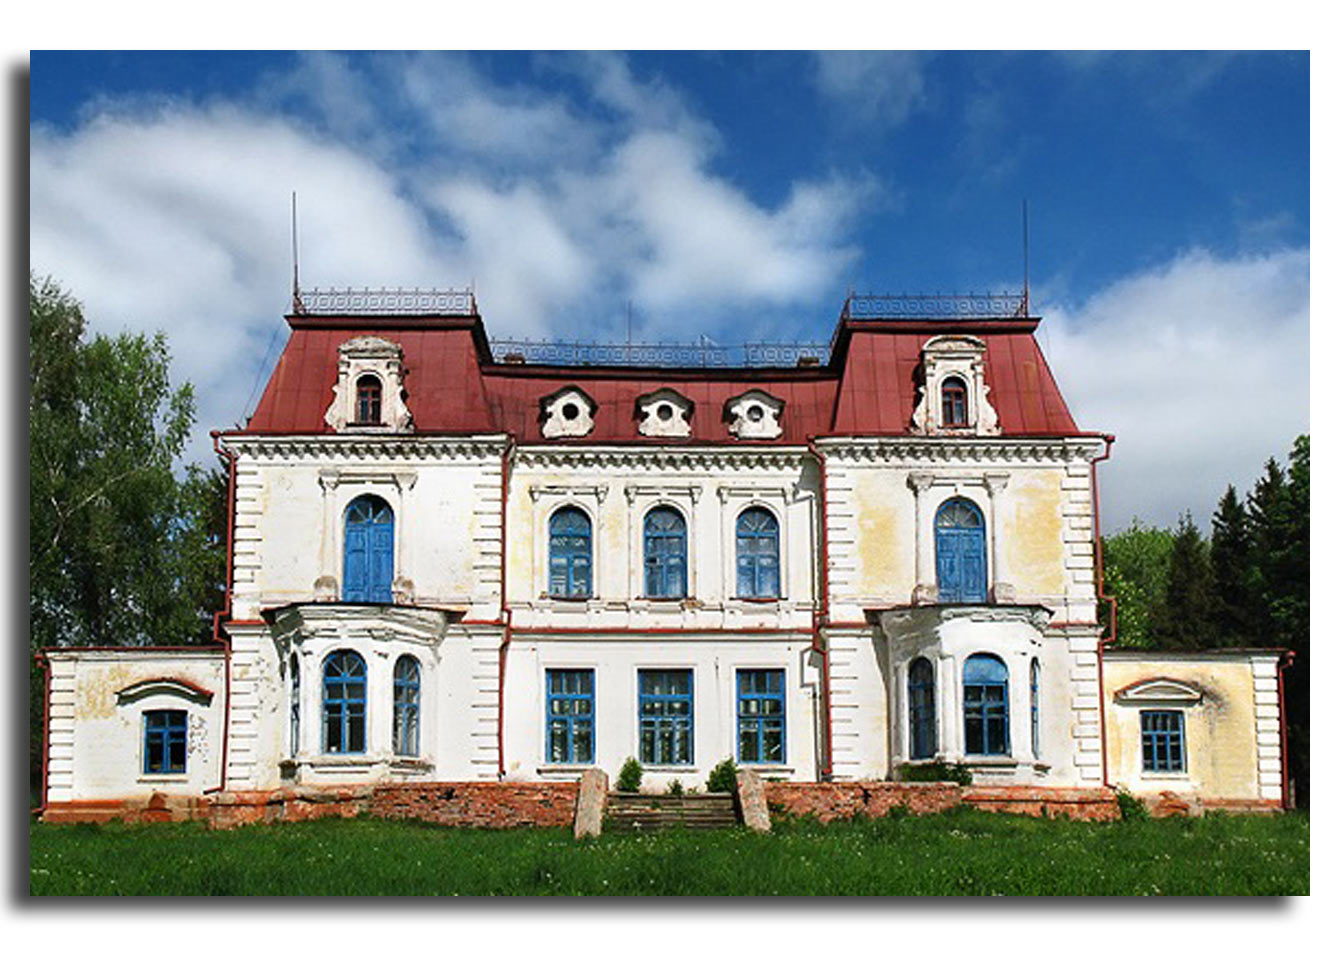 Były pałac Sobańskich-Tyszkiewiczów. Zdjęcie pobrano z http://voyager-a.livejournal.com/51963.html